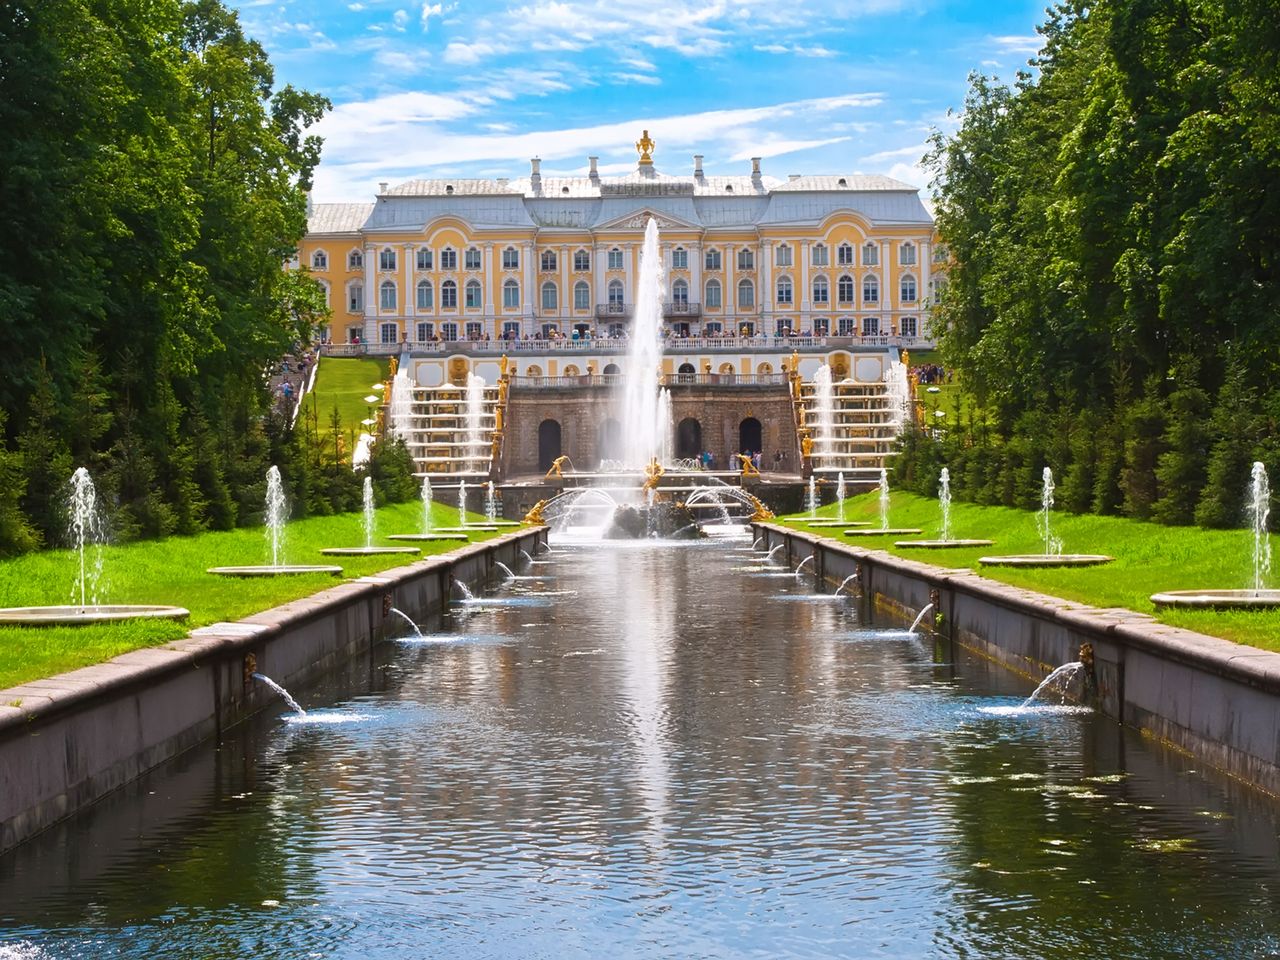 Петергоф – золоченая столица фонтанов  | Цена 11700₽, отзывы, описание экскурсии